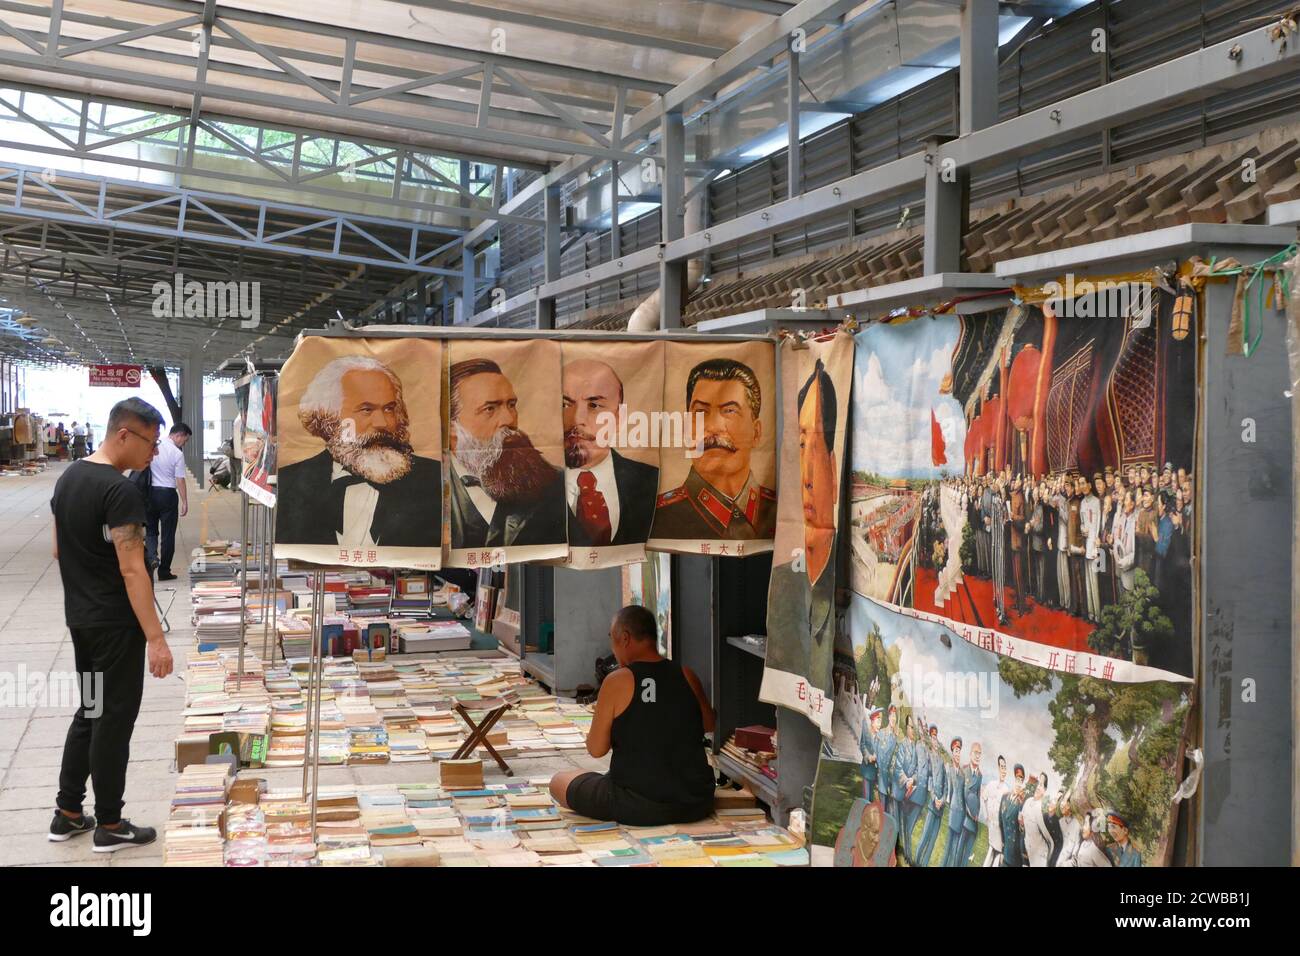 Portraits de Karl Marx, Friederich Engels, Lénine et Staline dans un marché chinois. Ces symboles populaires du communisme s'asseoir aux côtés d'un portrait de Mao Banque D'Images